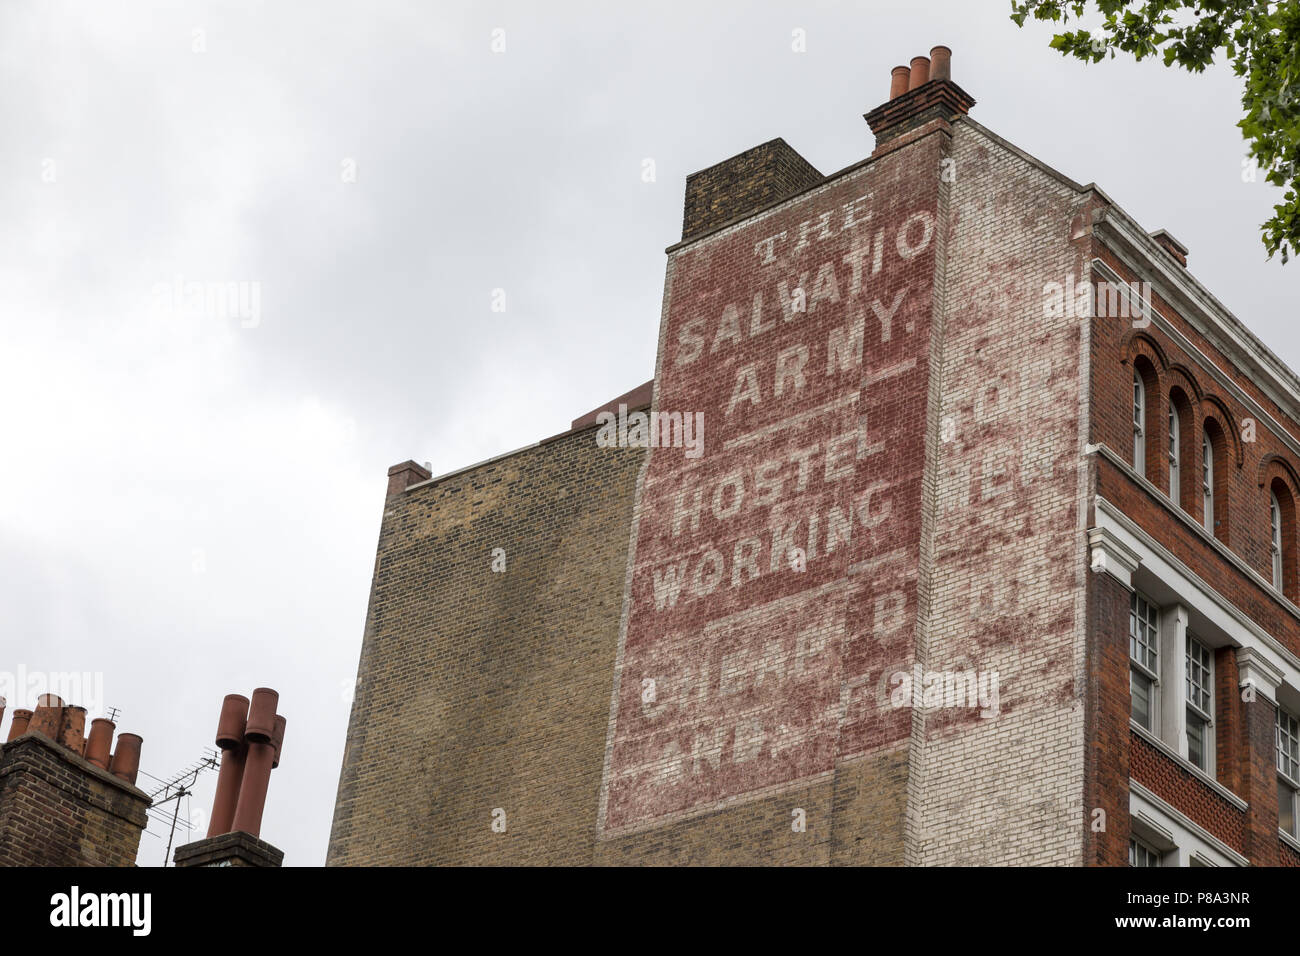 Londres, Reino Unido - 5 de junio de 2017: anuncio, en la fachada de ladrillo de un edificio londinense, por el Ejército de Salvación, una organización chartable fundada en el East End Foto de stock